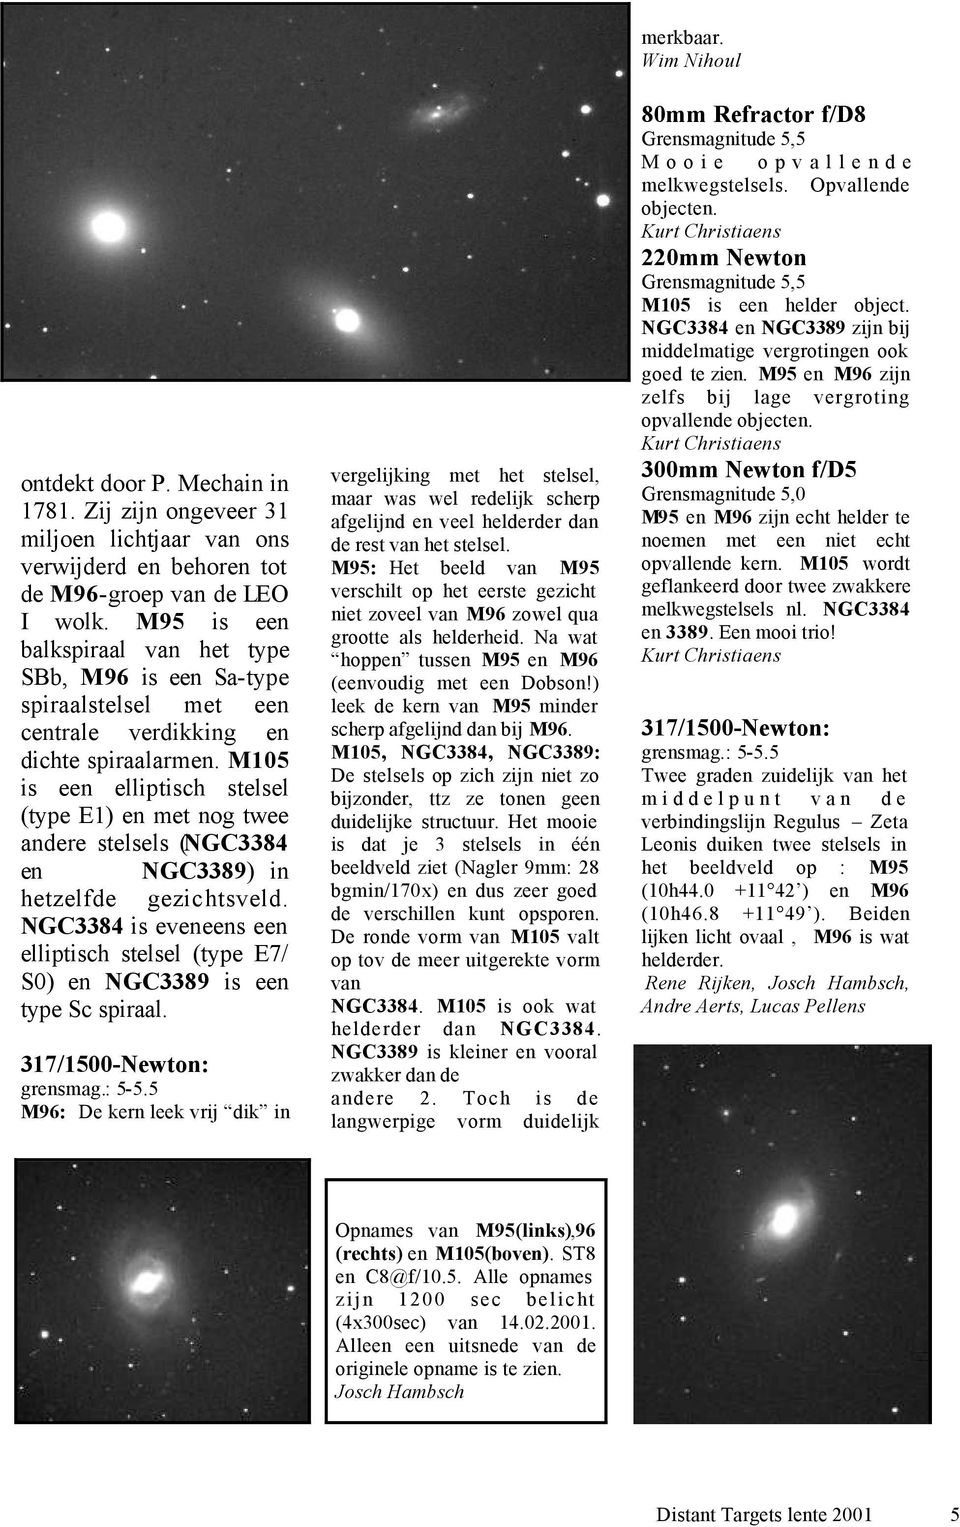 M105 is een elliptisch stelsel (type E1) en met nog twee andere stelsels (NGC3384 en NGC3389) in hetzelfde gezichtsveld.